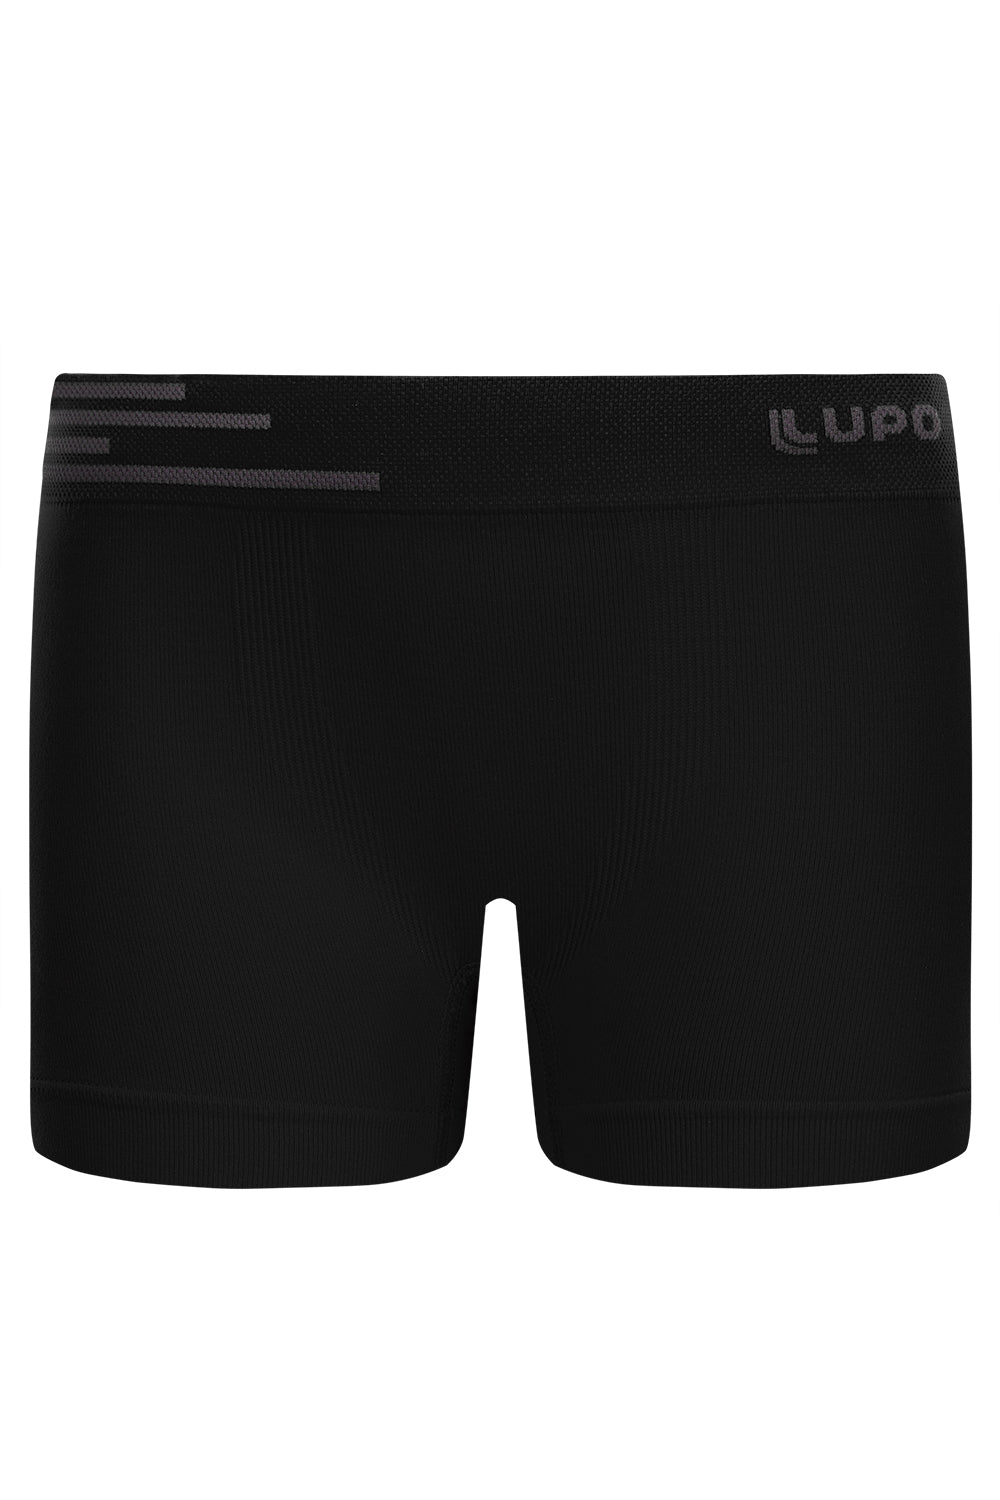 Lupo Seamless Boys Trunks Underwear – Lupo Australia